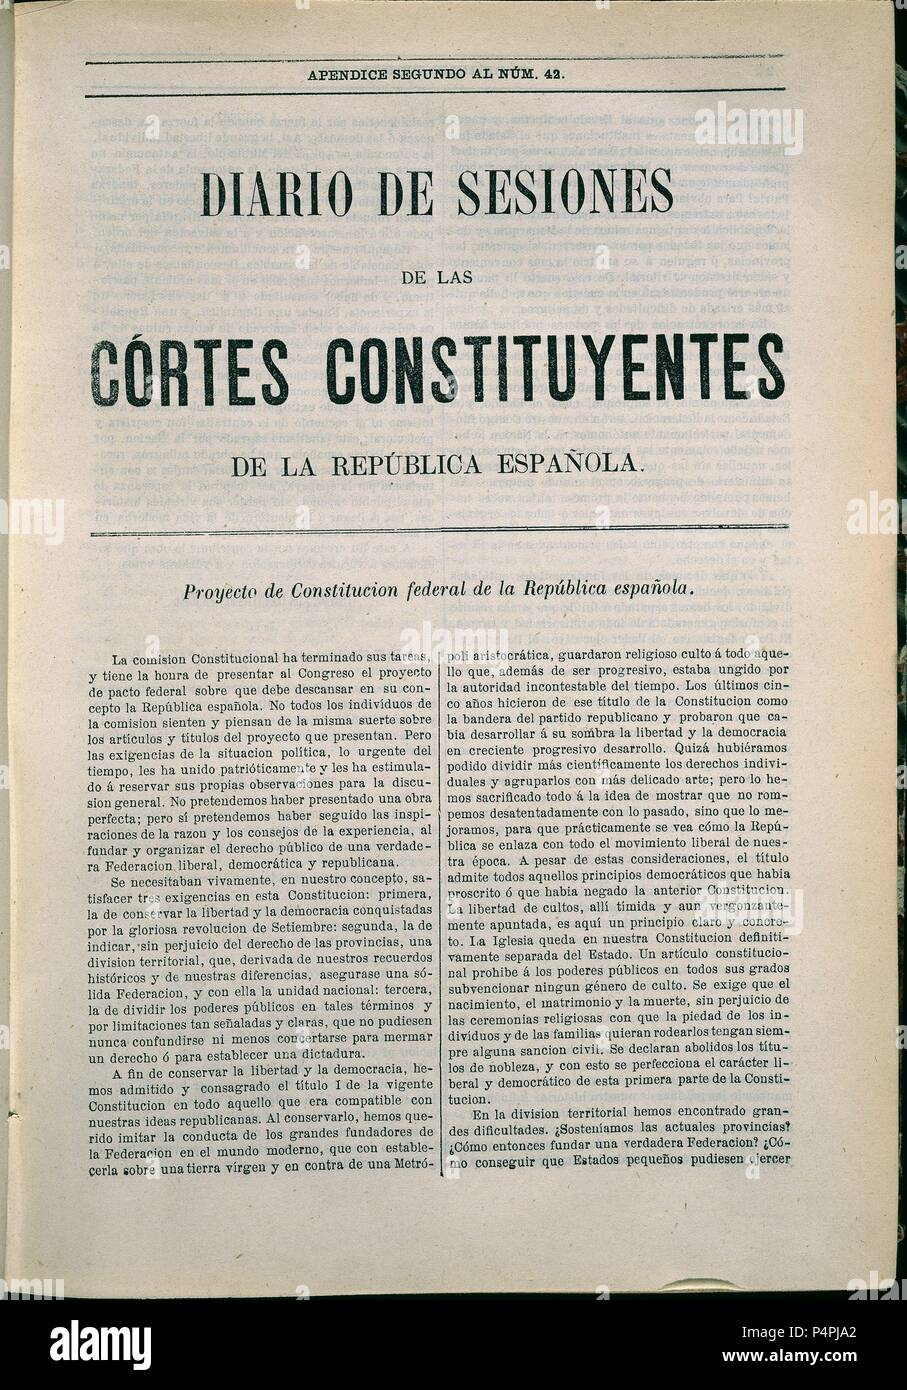 DIARIO DE SESIONES DE LAS CORTES CONSTITUYENTES DE LA REPUBLICA ESPAÑOLA.  Location: SENADO-BIBLIOTECA-COLECCION, MADRID, SPAIN Stock Photo - Alamy